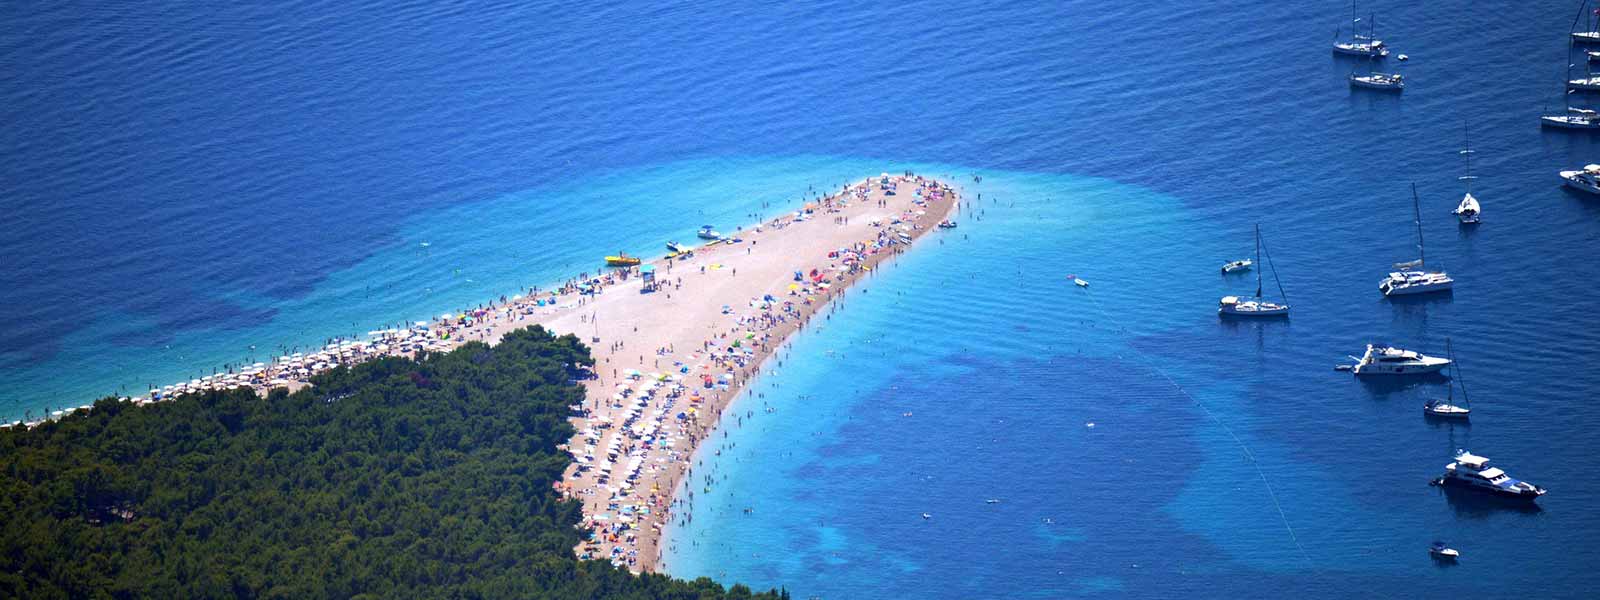 De kust van Kroatie